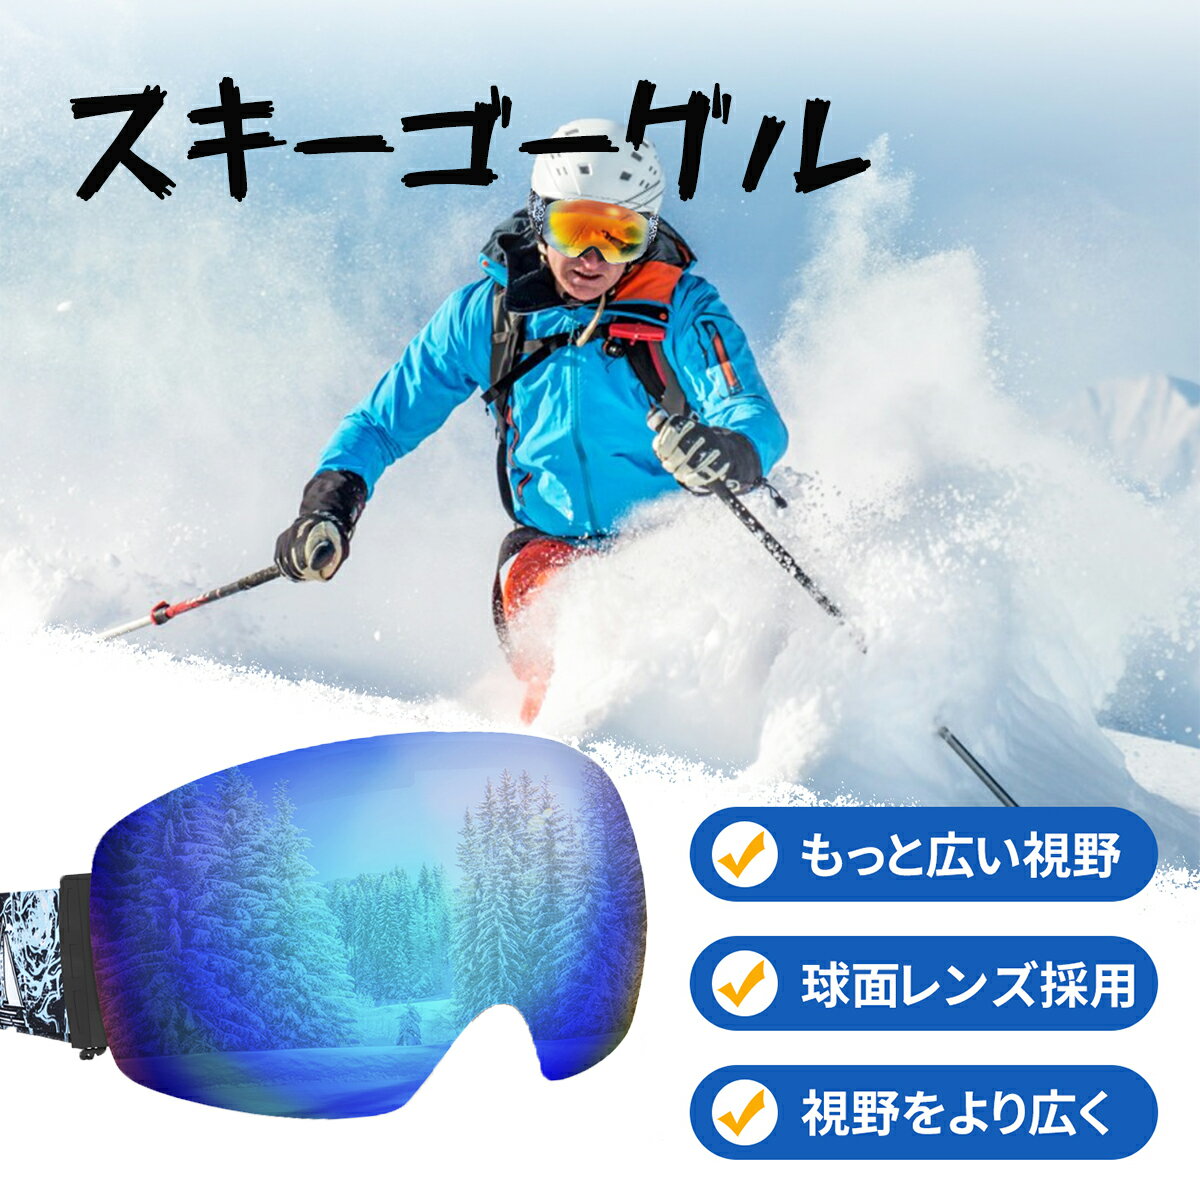 スキーゴーグル 2色スノーボードゴーグル アップグレード 広視野球面レンズ 曇り防止 紫外線防止 メガネ対応 軽量 耐衝撃 男女 適用 スキー用のスポーツゴーグル